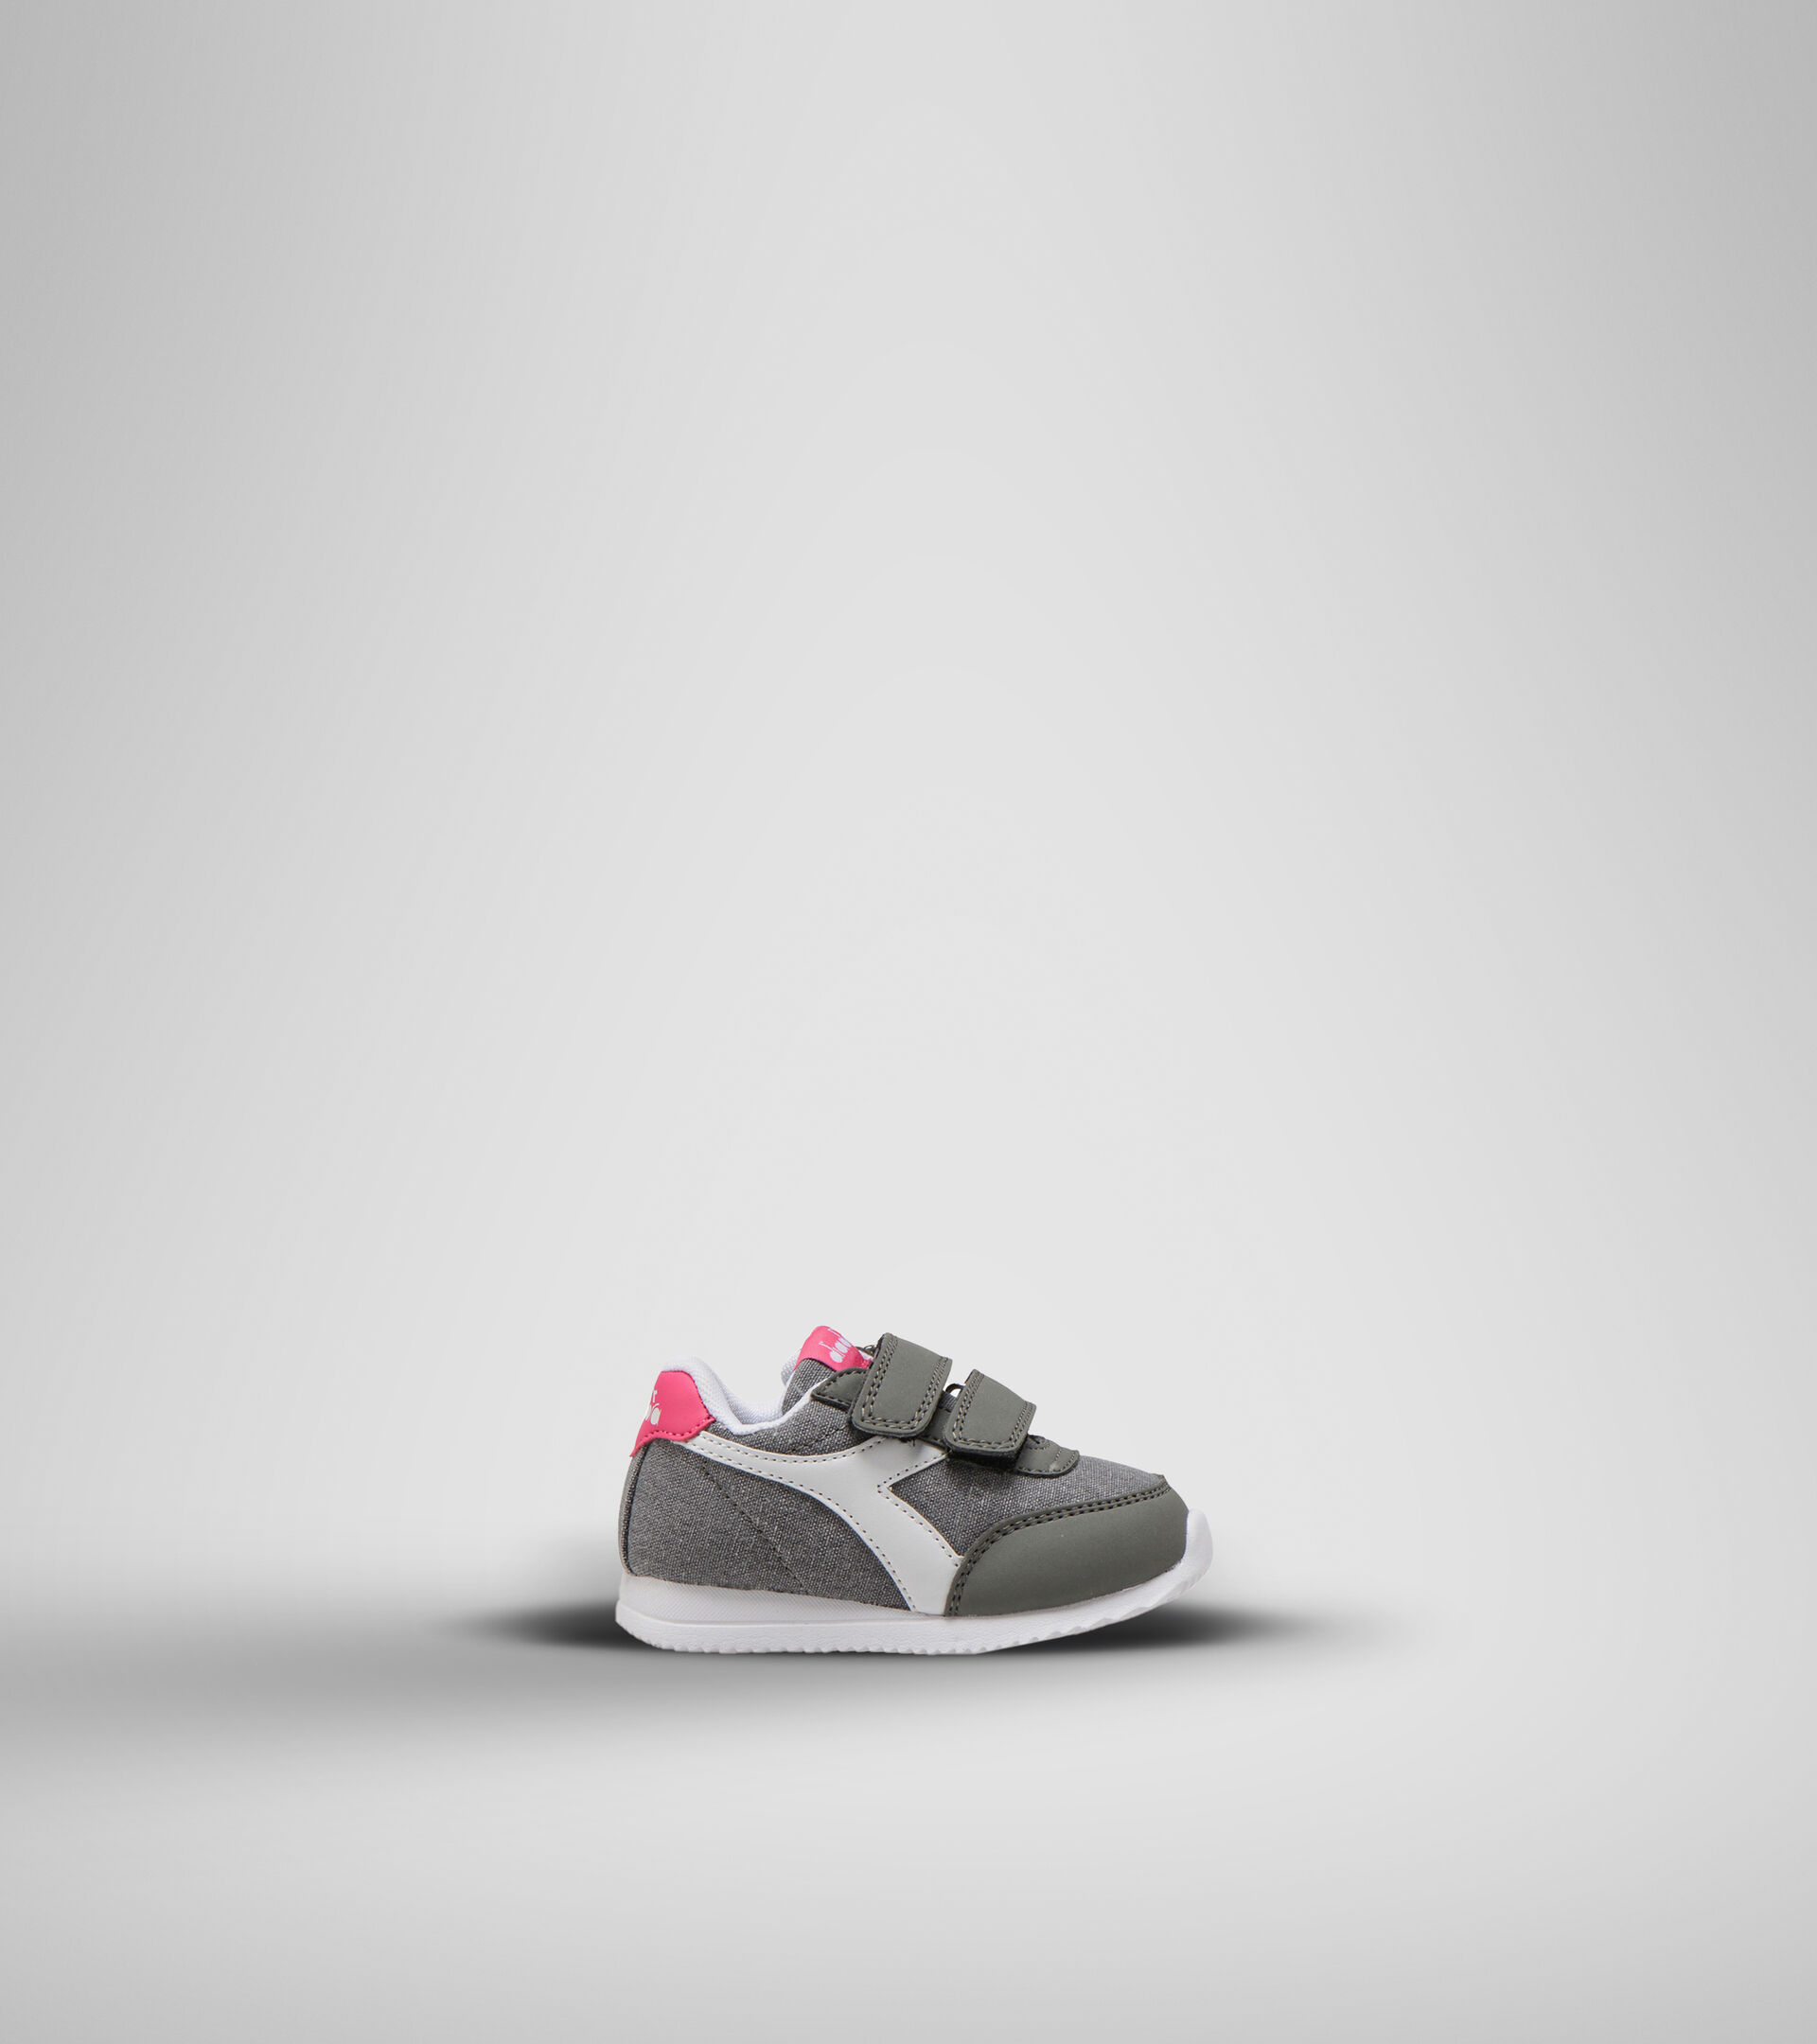 Chaussures de sport - Bambins 1-4 ans JOG LIGHT TD GRIS CHARBON/FANDANGO ROSE - Diadora